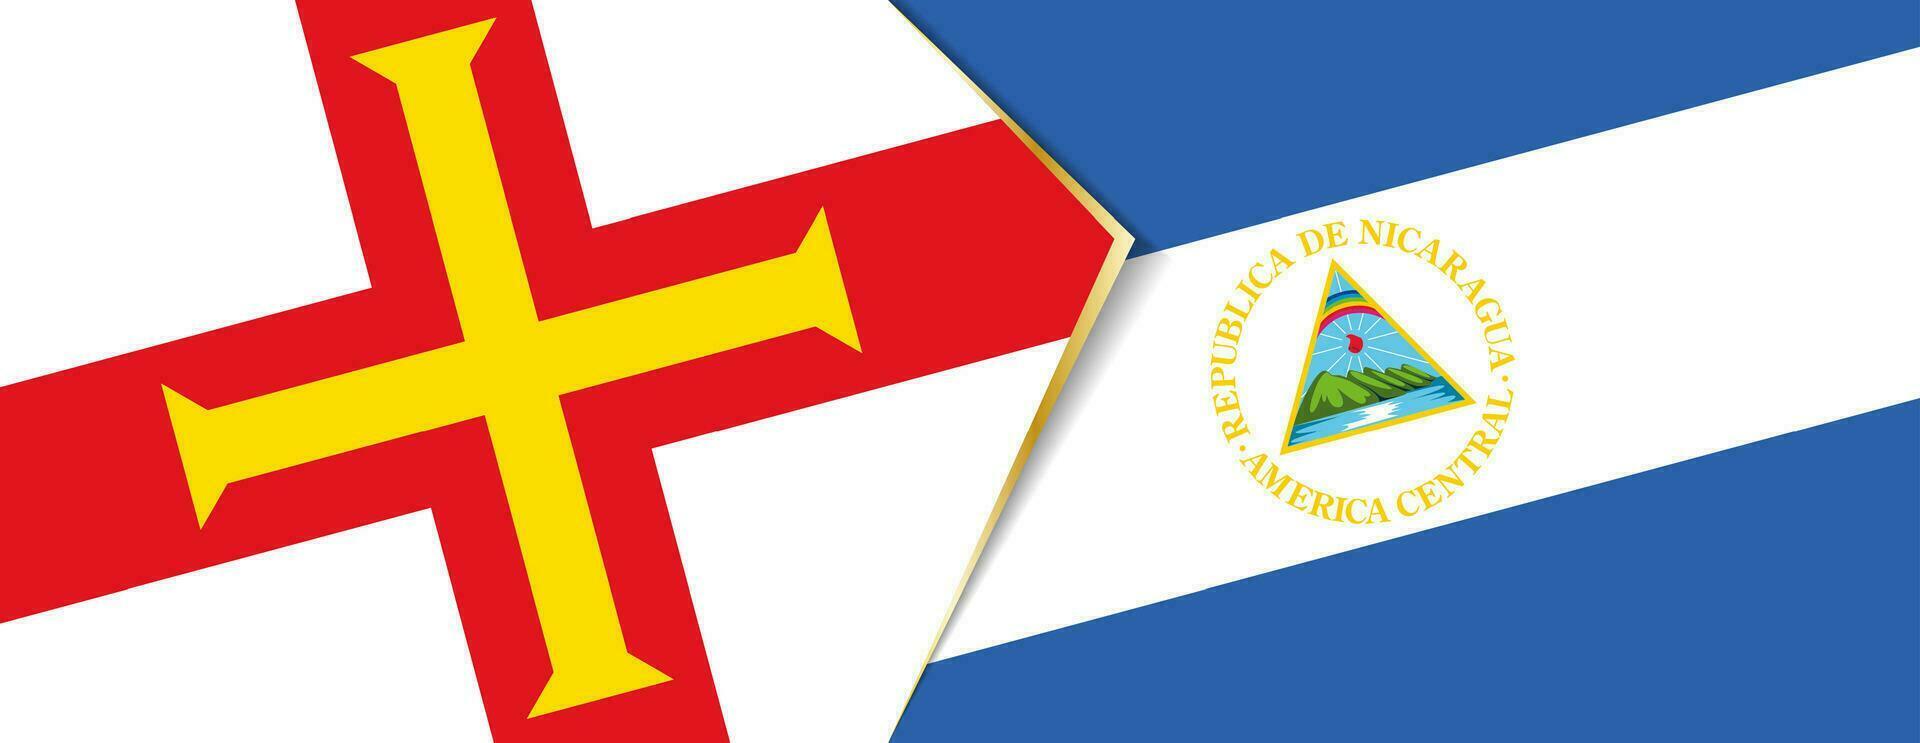 guernsey y Nicaragua banderas, dos vector banderas